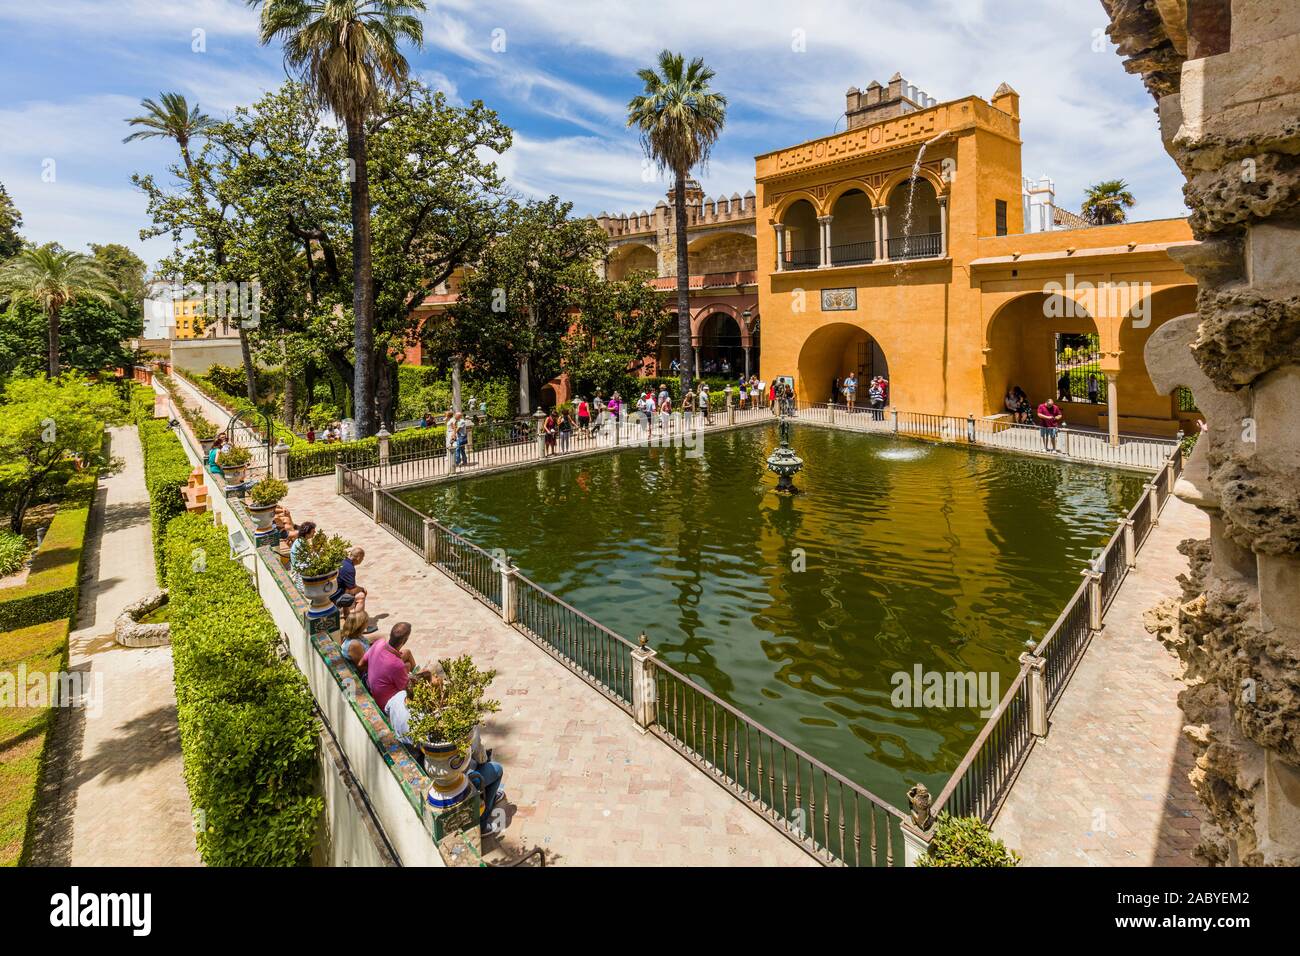 Jardins de Alcazar de Séville, l'Alcazar Royal de Séville est un palais royal à Séville Andalousie Espagne Banque D'Images